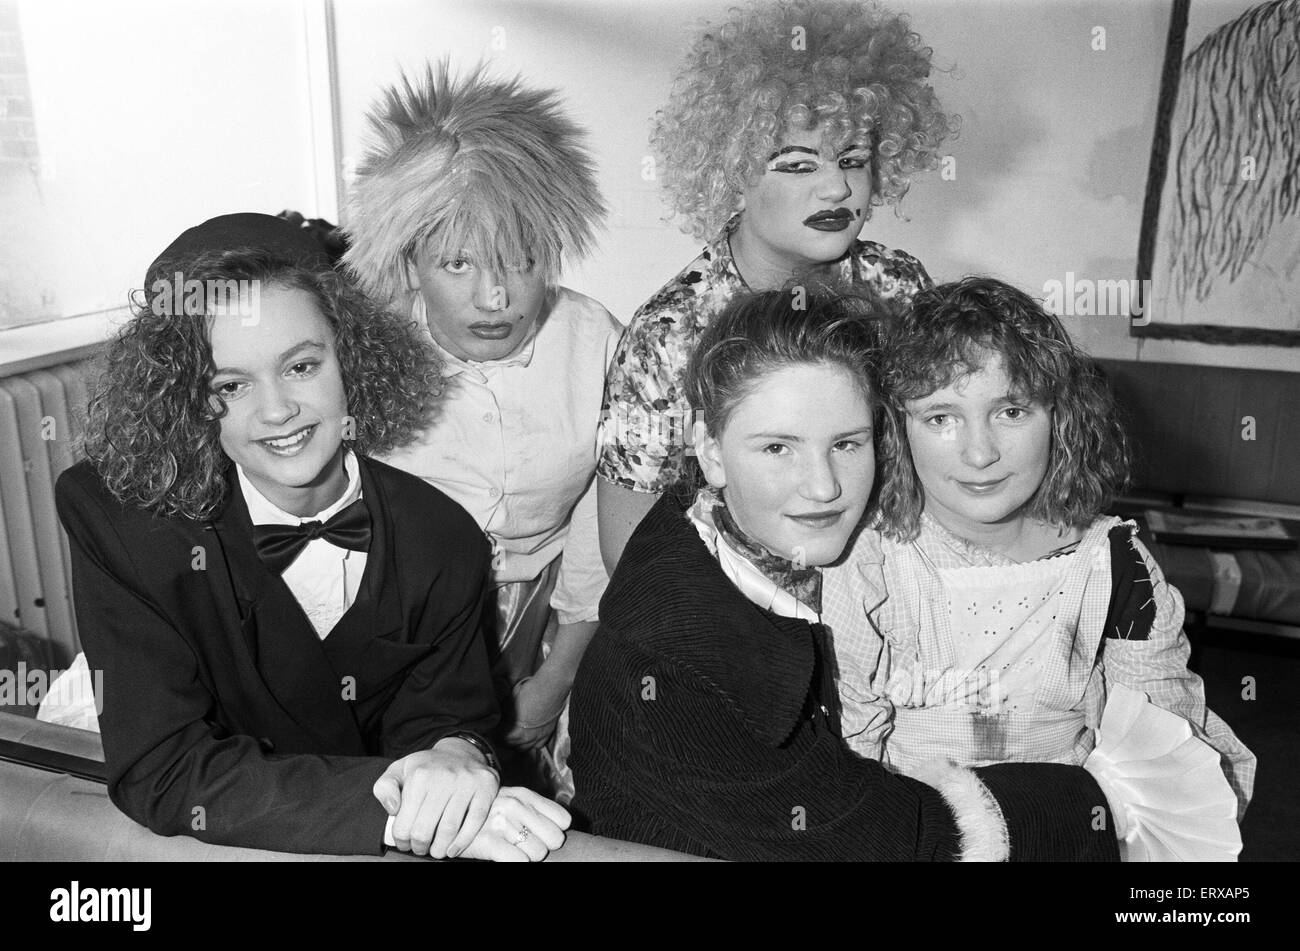 L'École secondaire Thornhill, Dewsbury a participé à la comédie de Cendrillon. 12 décembre 1991. Banque D'Images